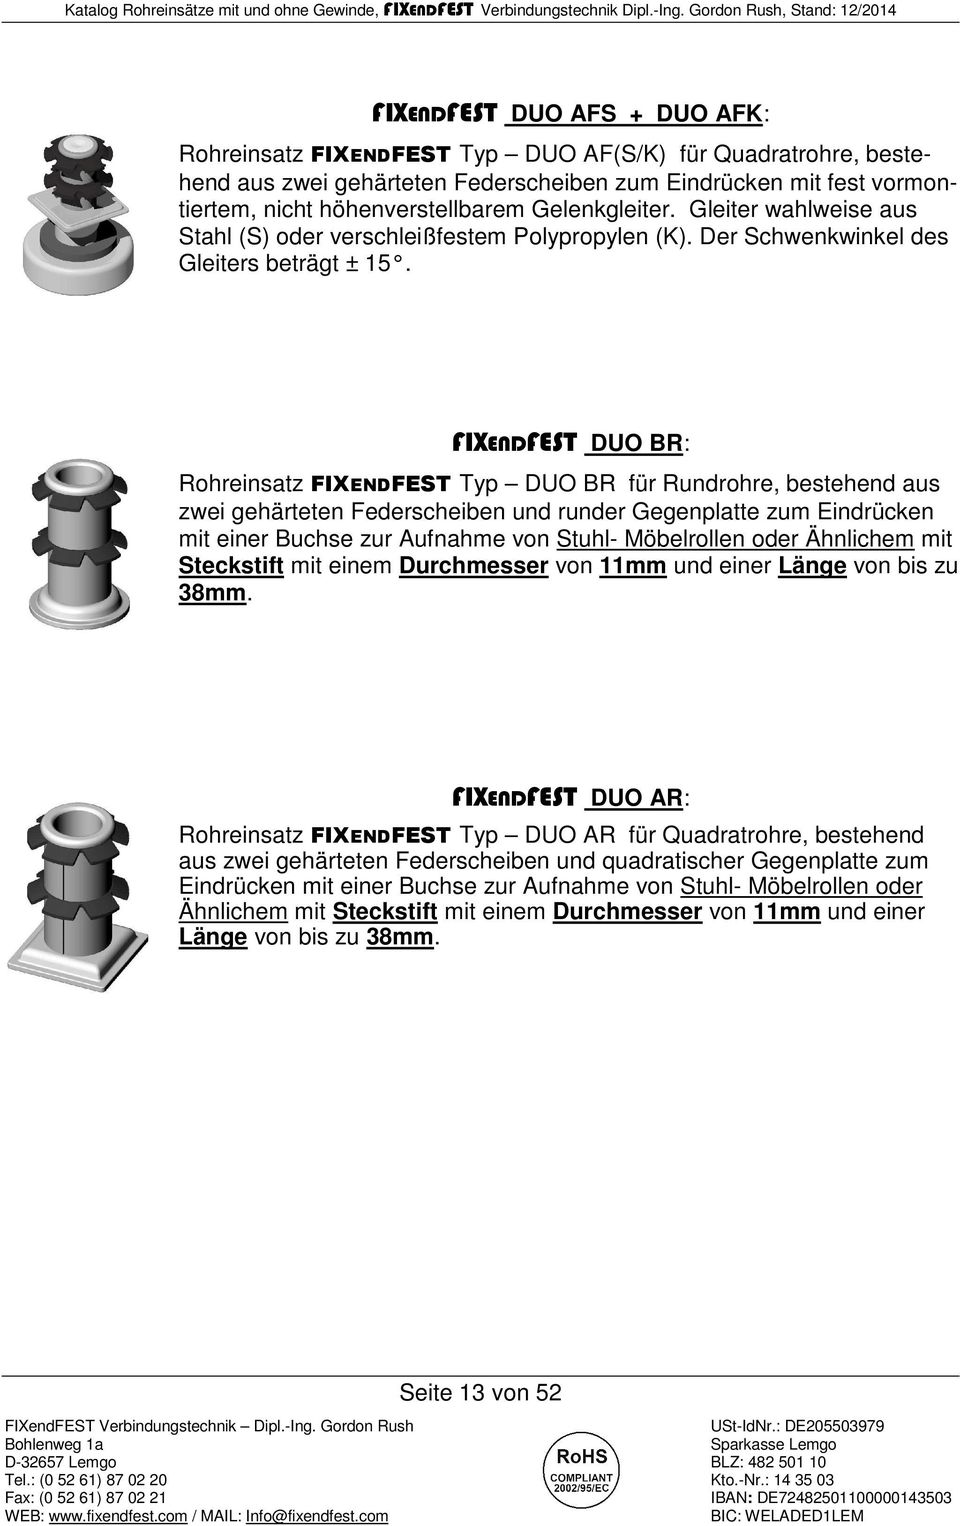 FIXENDFEST DUO BR: Rohreinsatz FIXENDFEST Typ DUO BR für Rundrohre, bestehend aus zwei gehärteten Federscheiben und runder Gegenplatte zum Eindrücken mit einer Buchse zur Aufnahme von Stuhl-